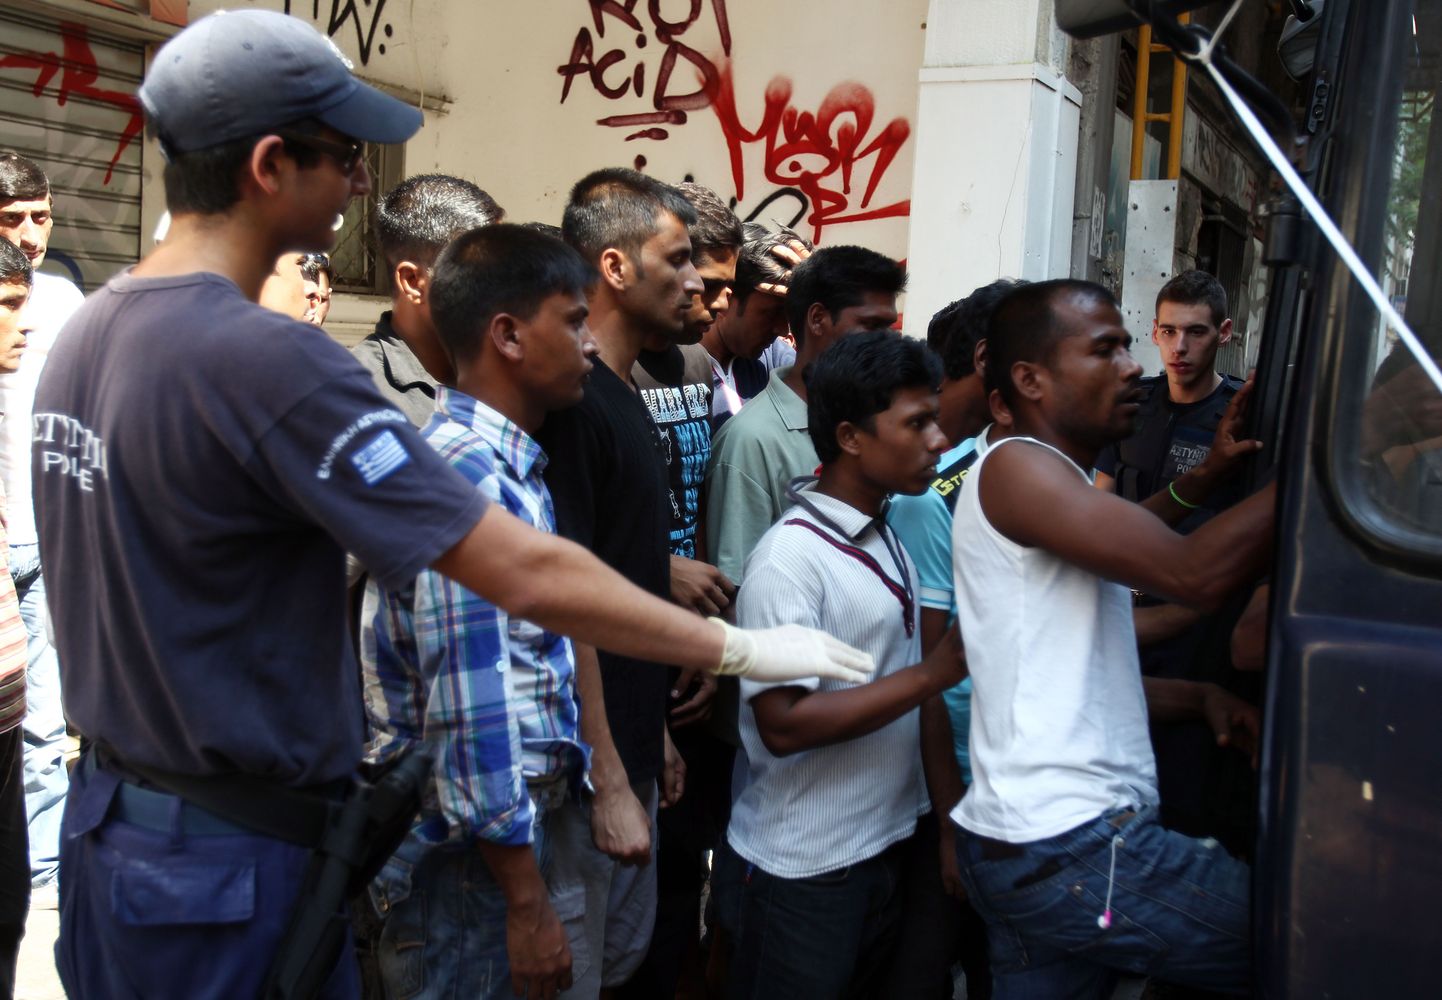 Migrandid eile Ateenas sisenemas politseibussi. Illegaalsete sisserändajate vastane operatsioon toimus Ateena kesklinnas ja Kreeka kirdepiiri ääres.